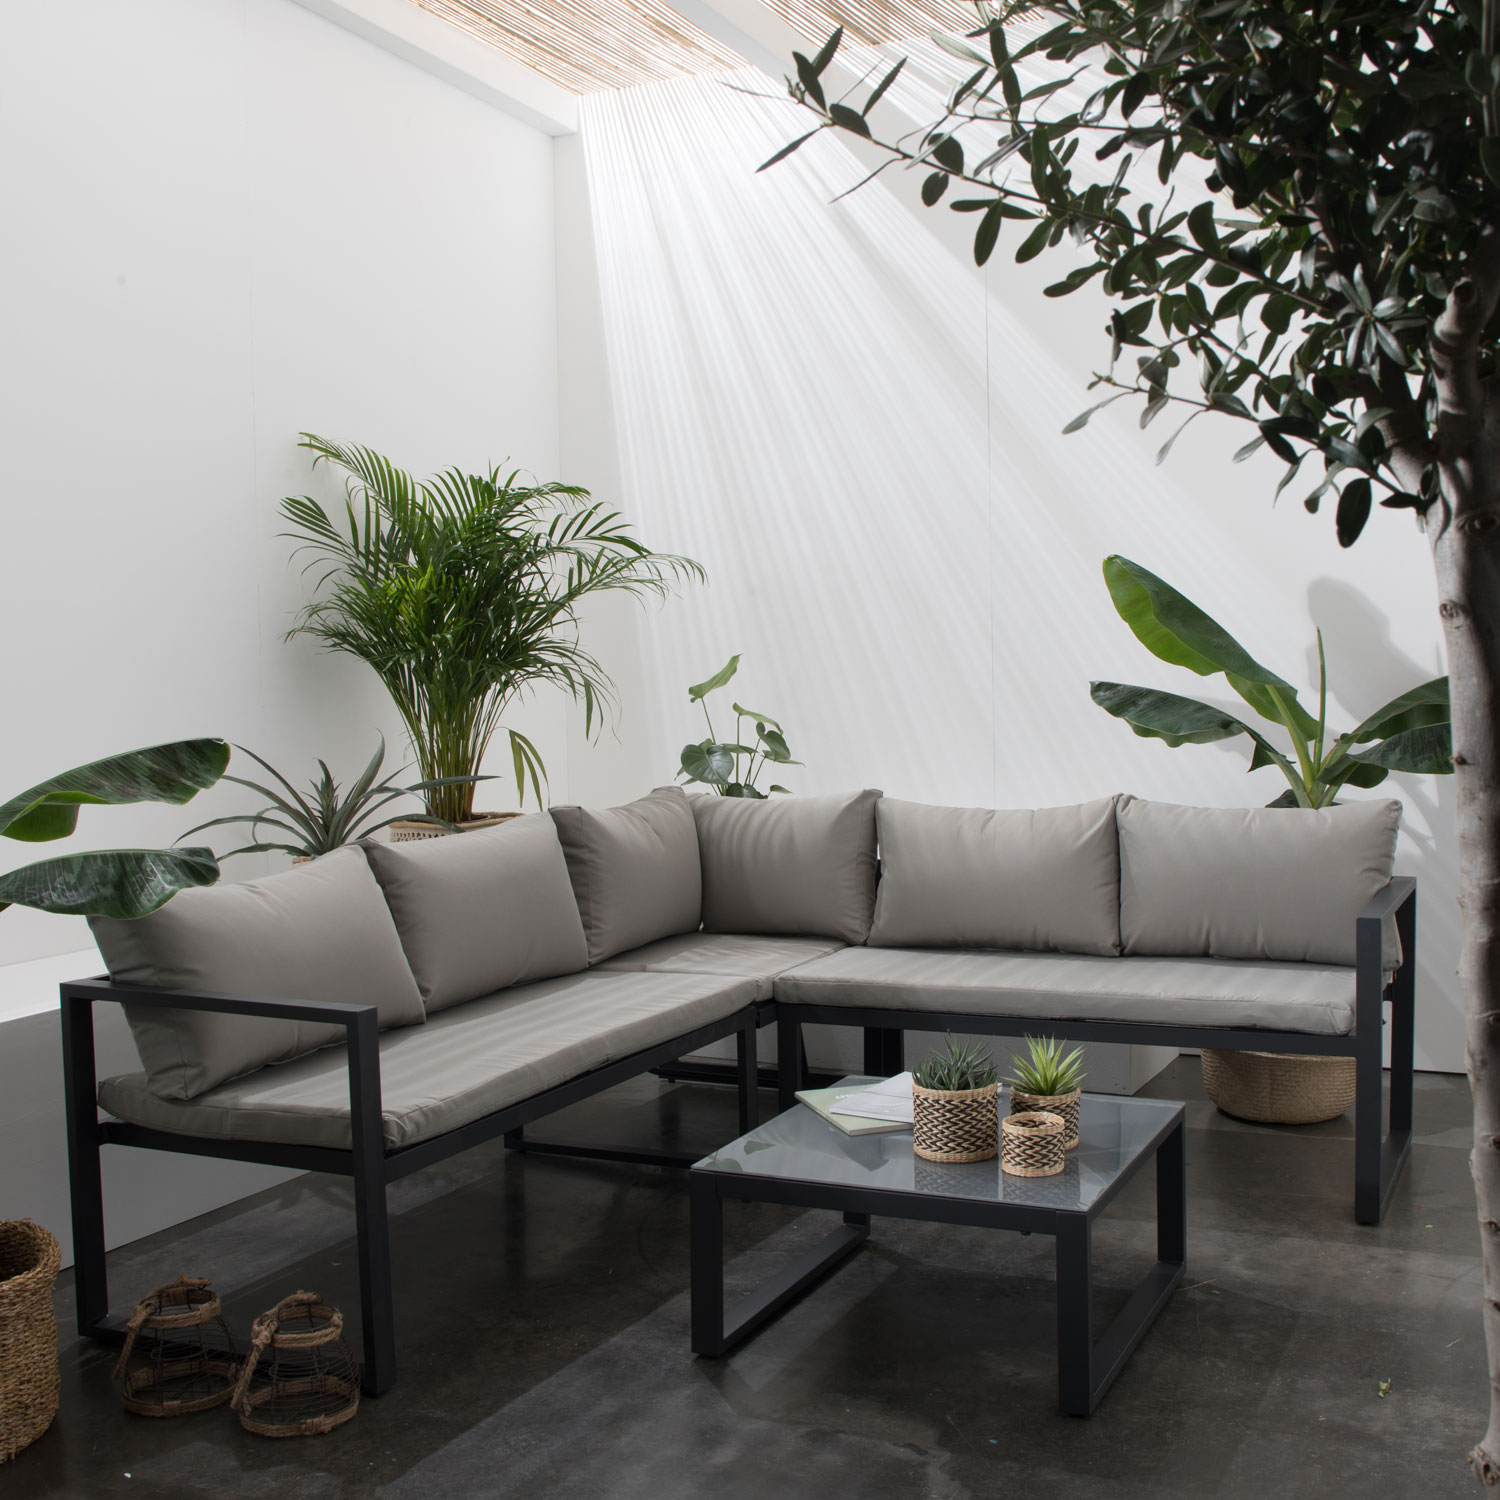 Set di mobili da giardino modulari IBIZA in tessuto grigio 4 posti - alluminio antracite